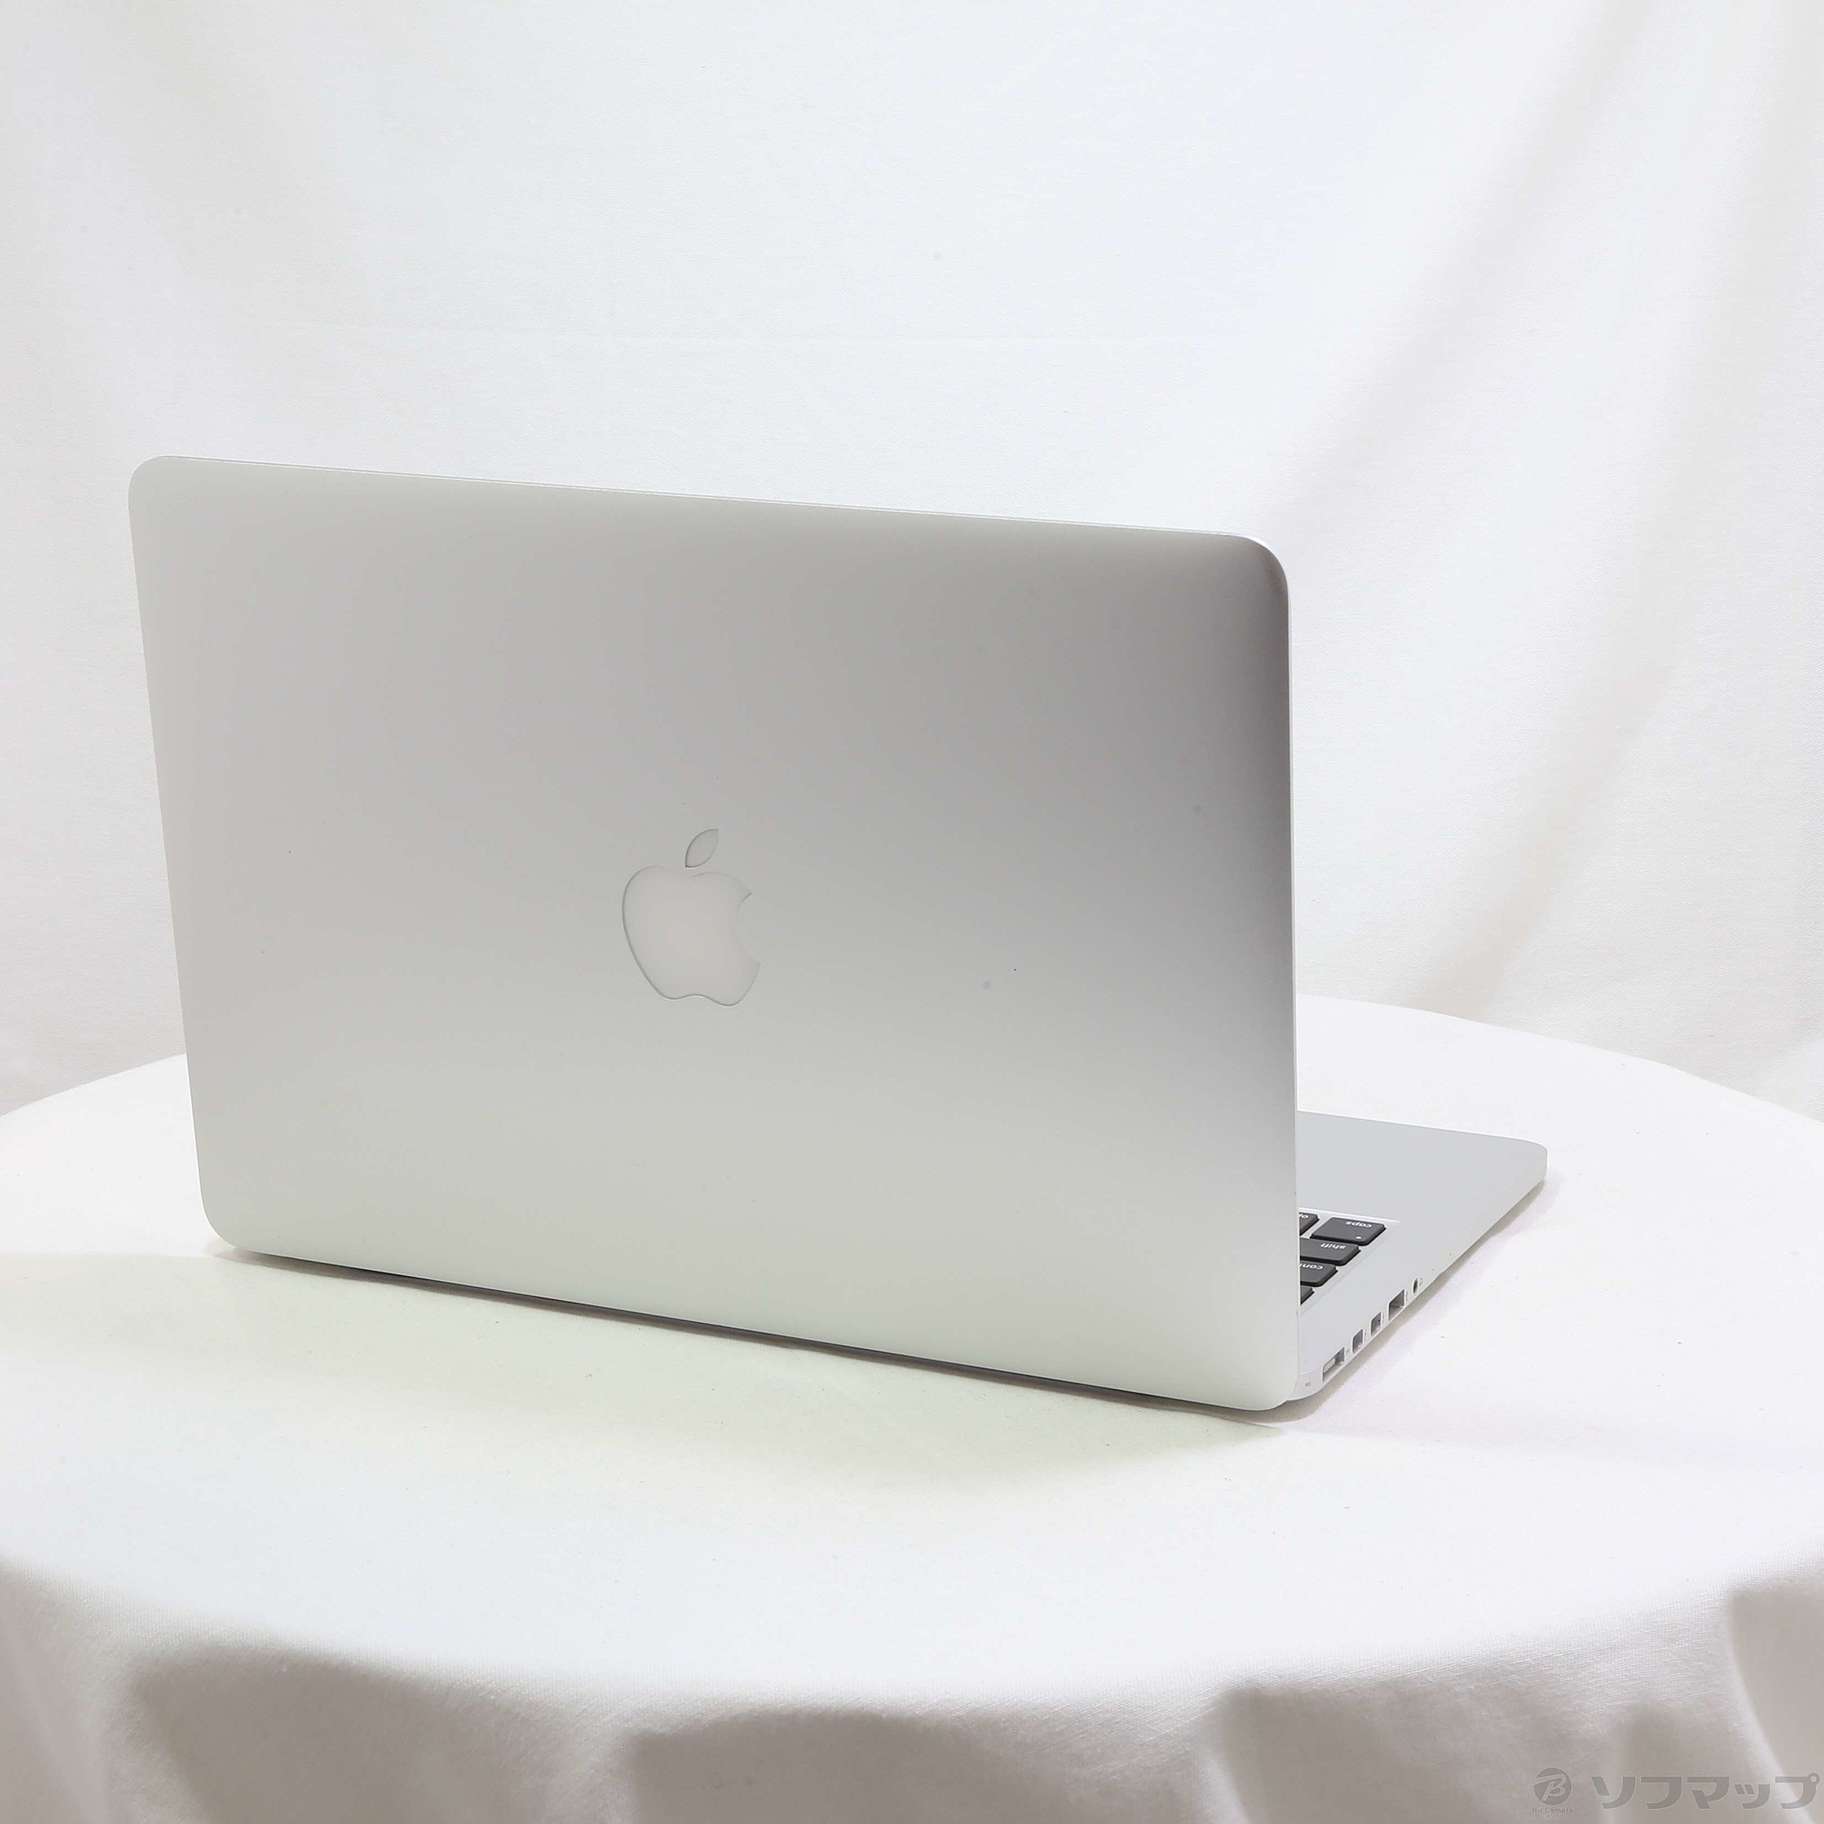 MacBook Pro mid 2014 13インチ MGX72J/A